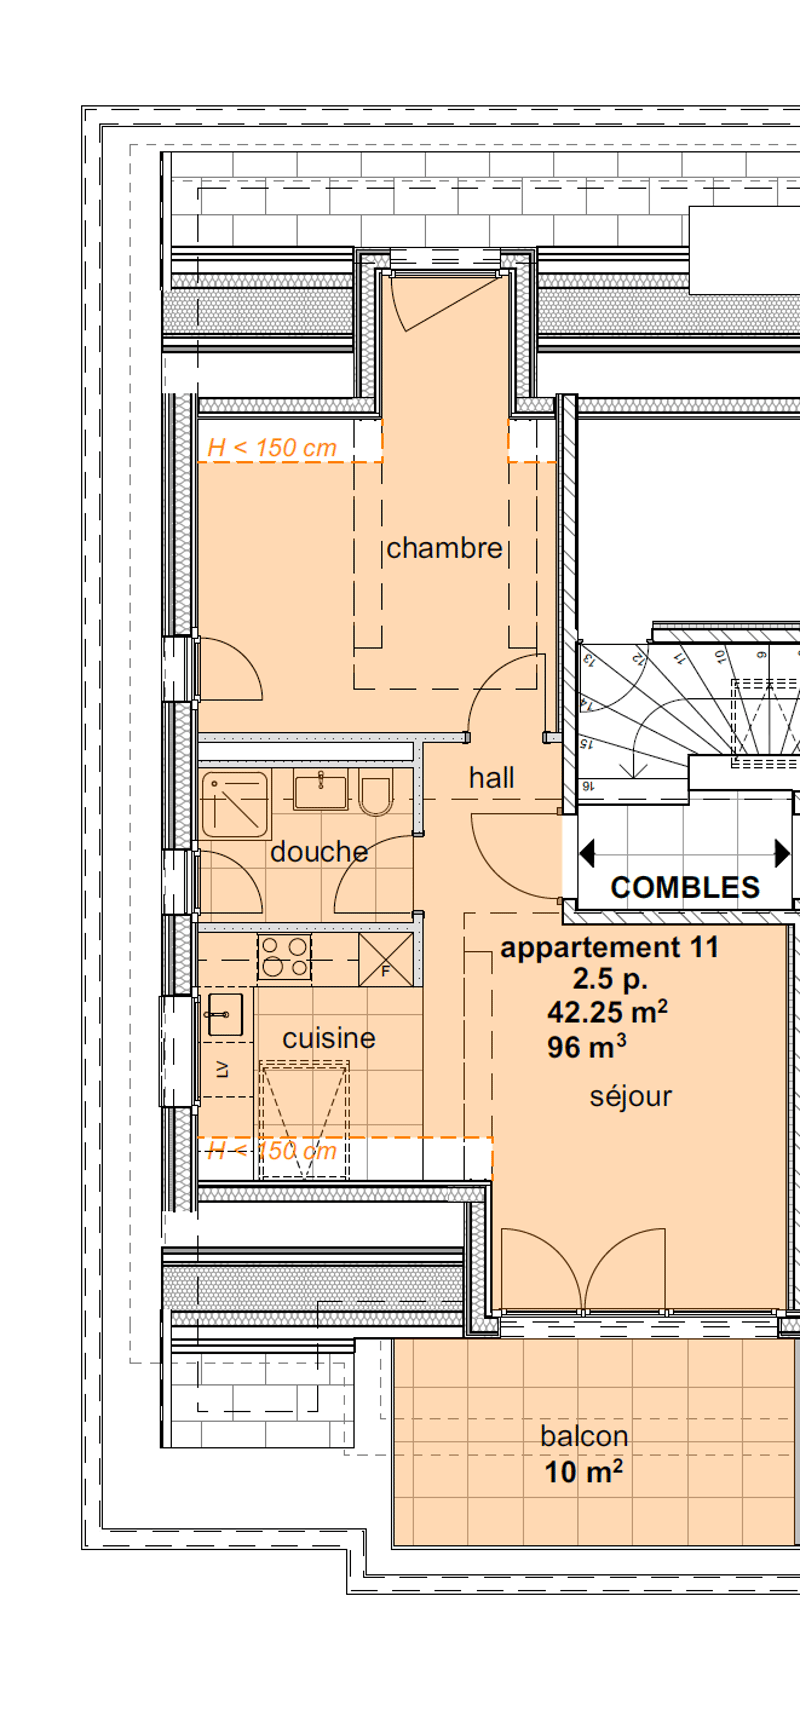 Appartements neufs de 1.5 pièces aux combles (3ème étage) - (nord) (2)